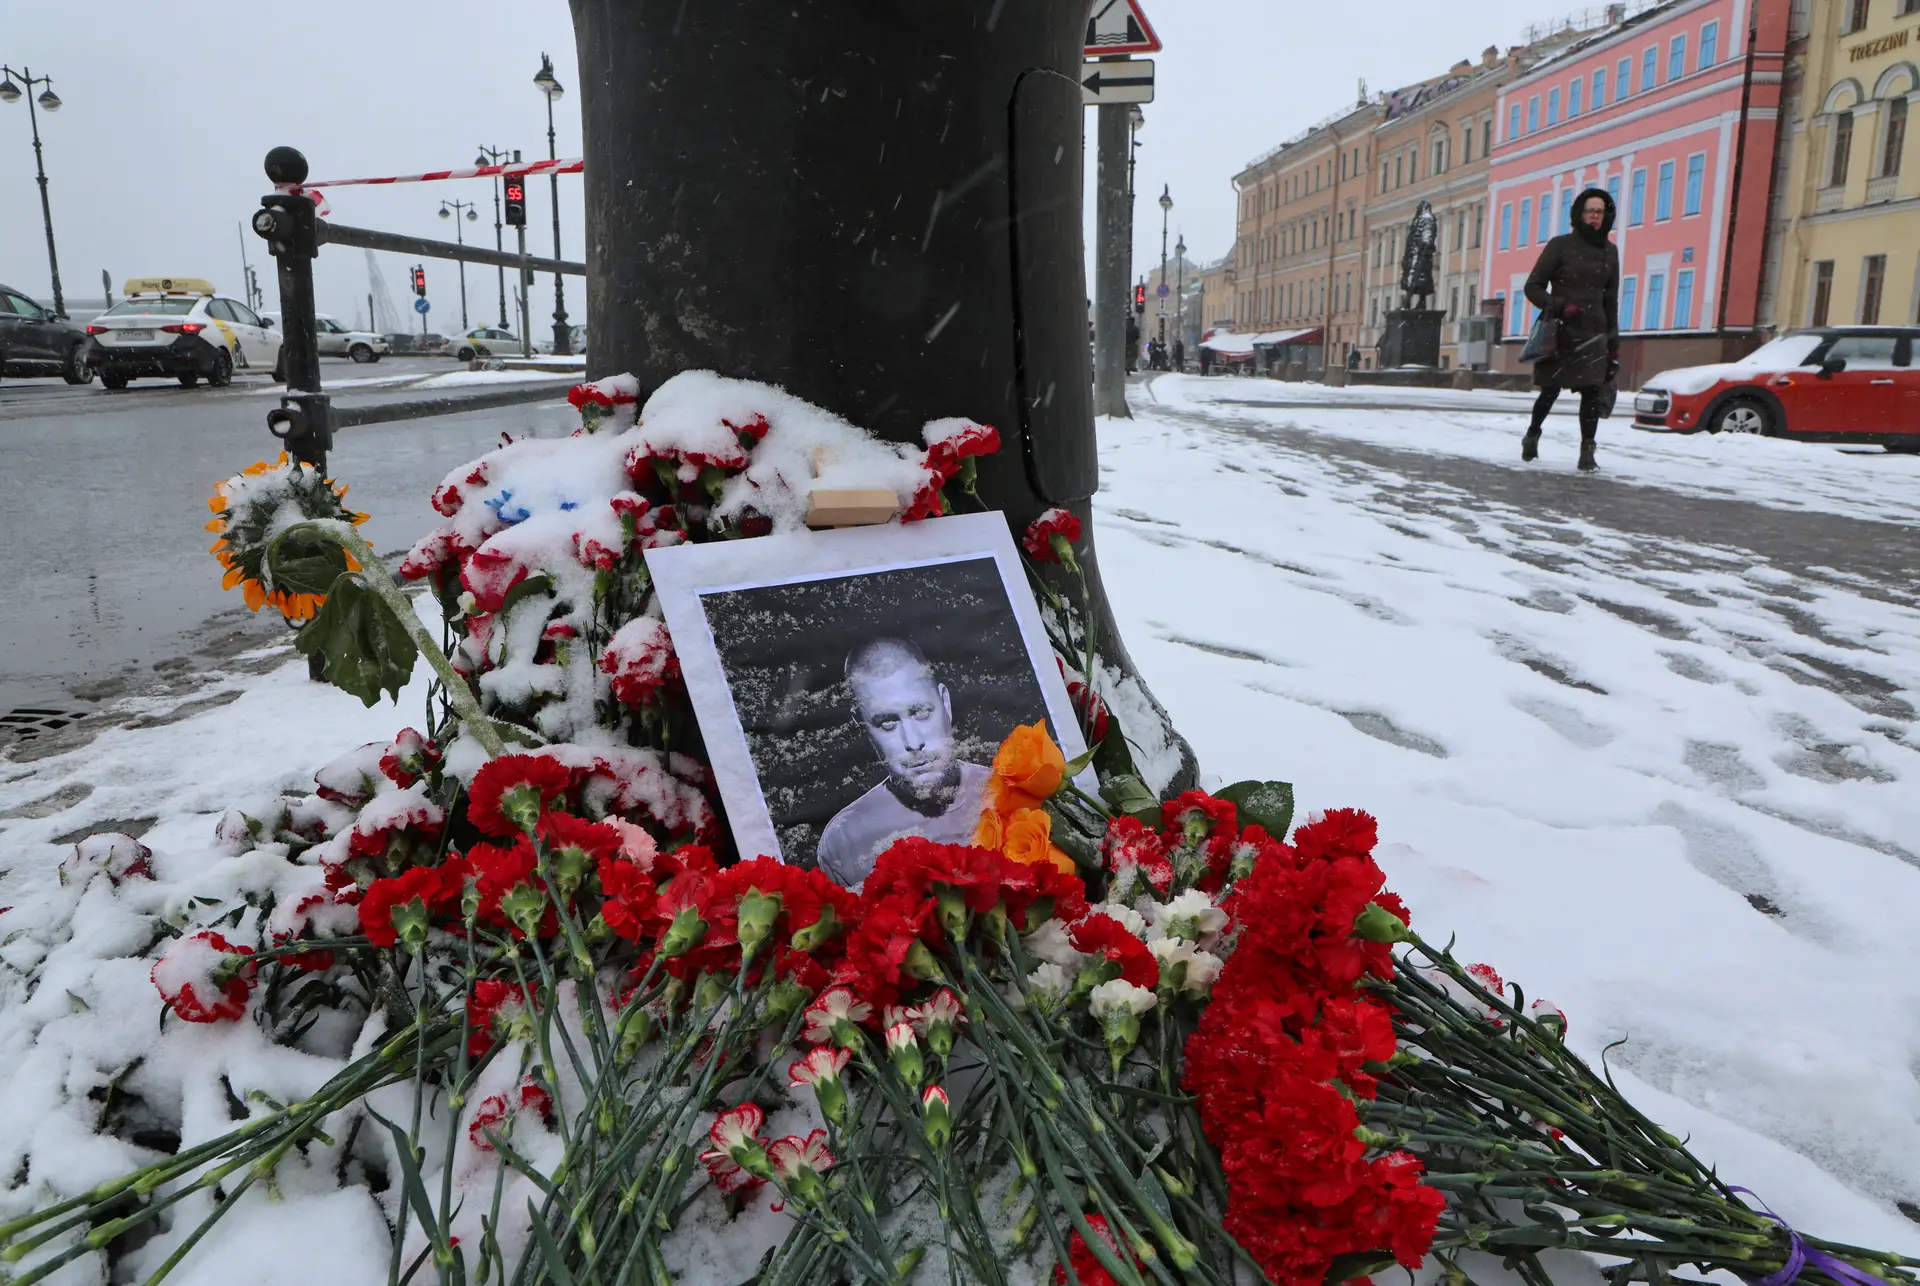 Vladlen Tatarsky foi morto enquanto liderava uma discussão num café nas margens do rio Neva, no centro histórico de São Petersburgo